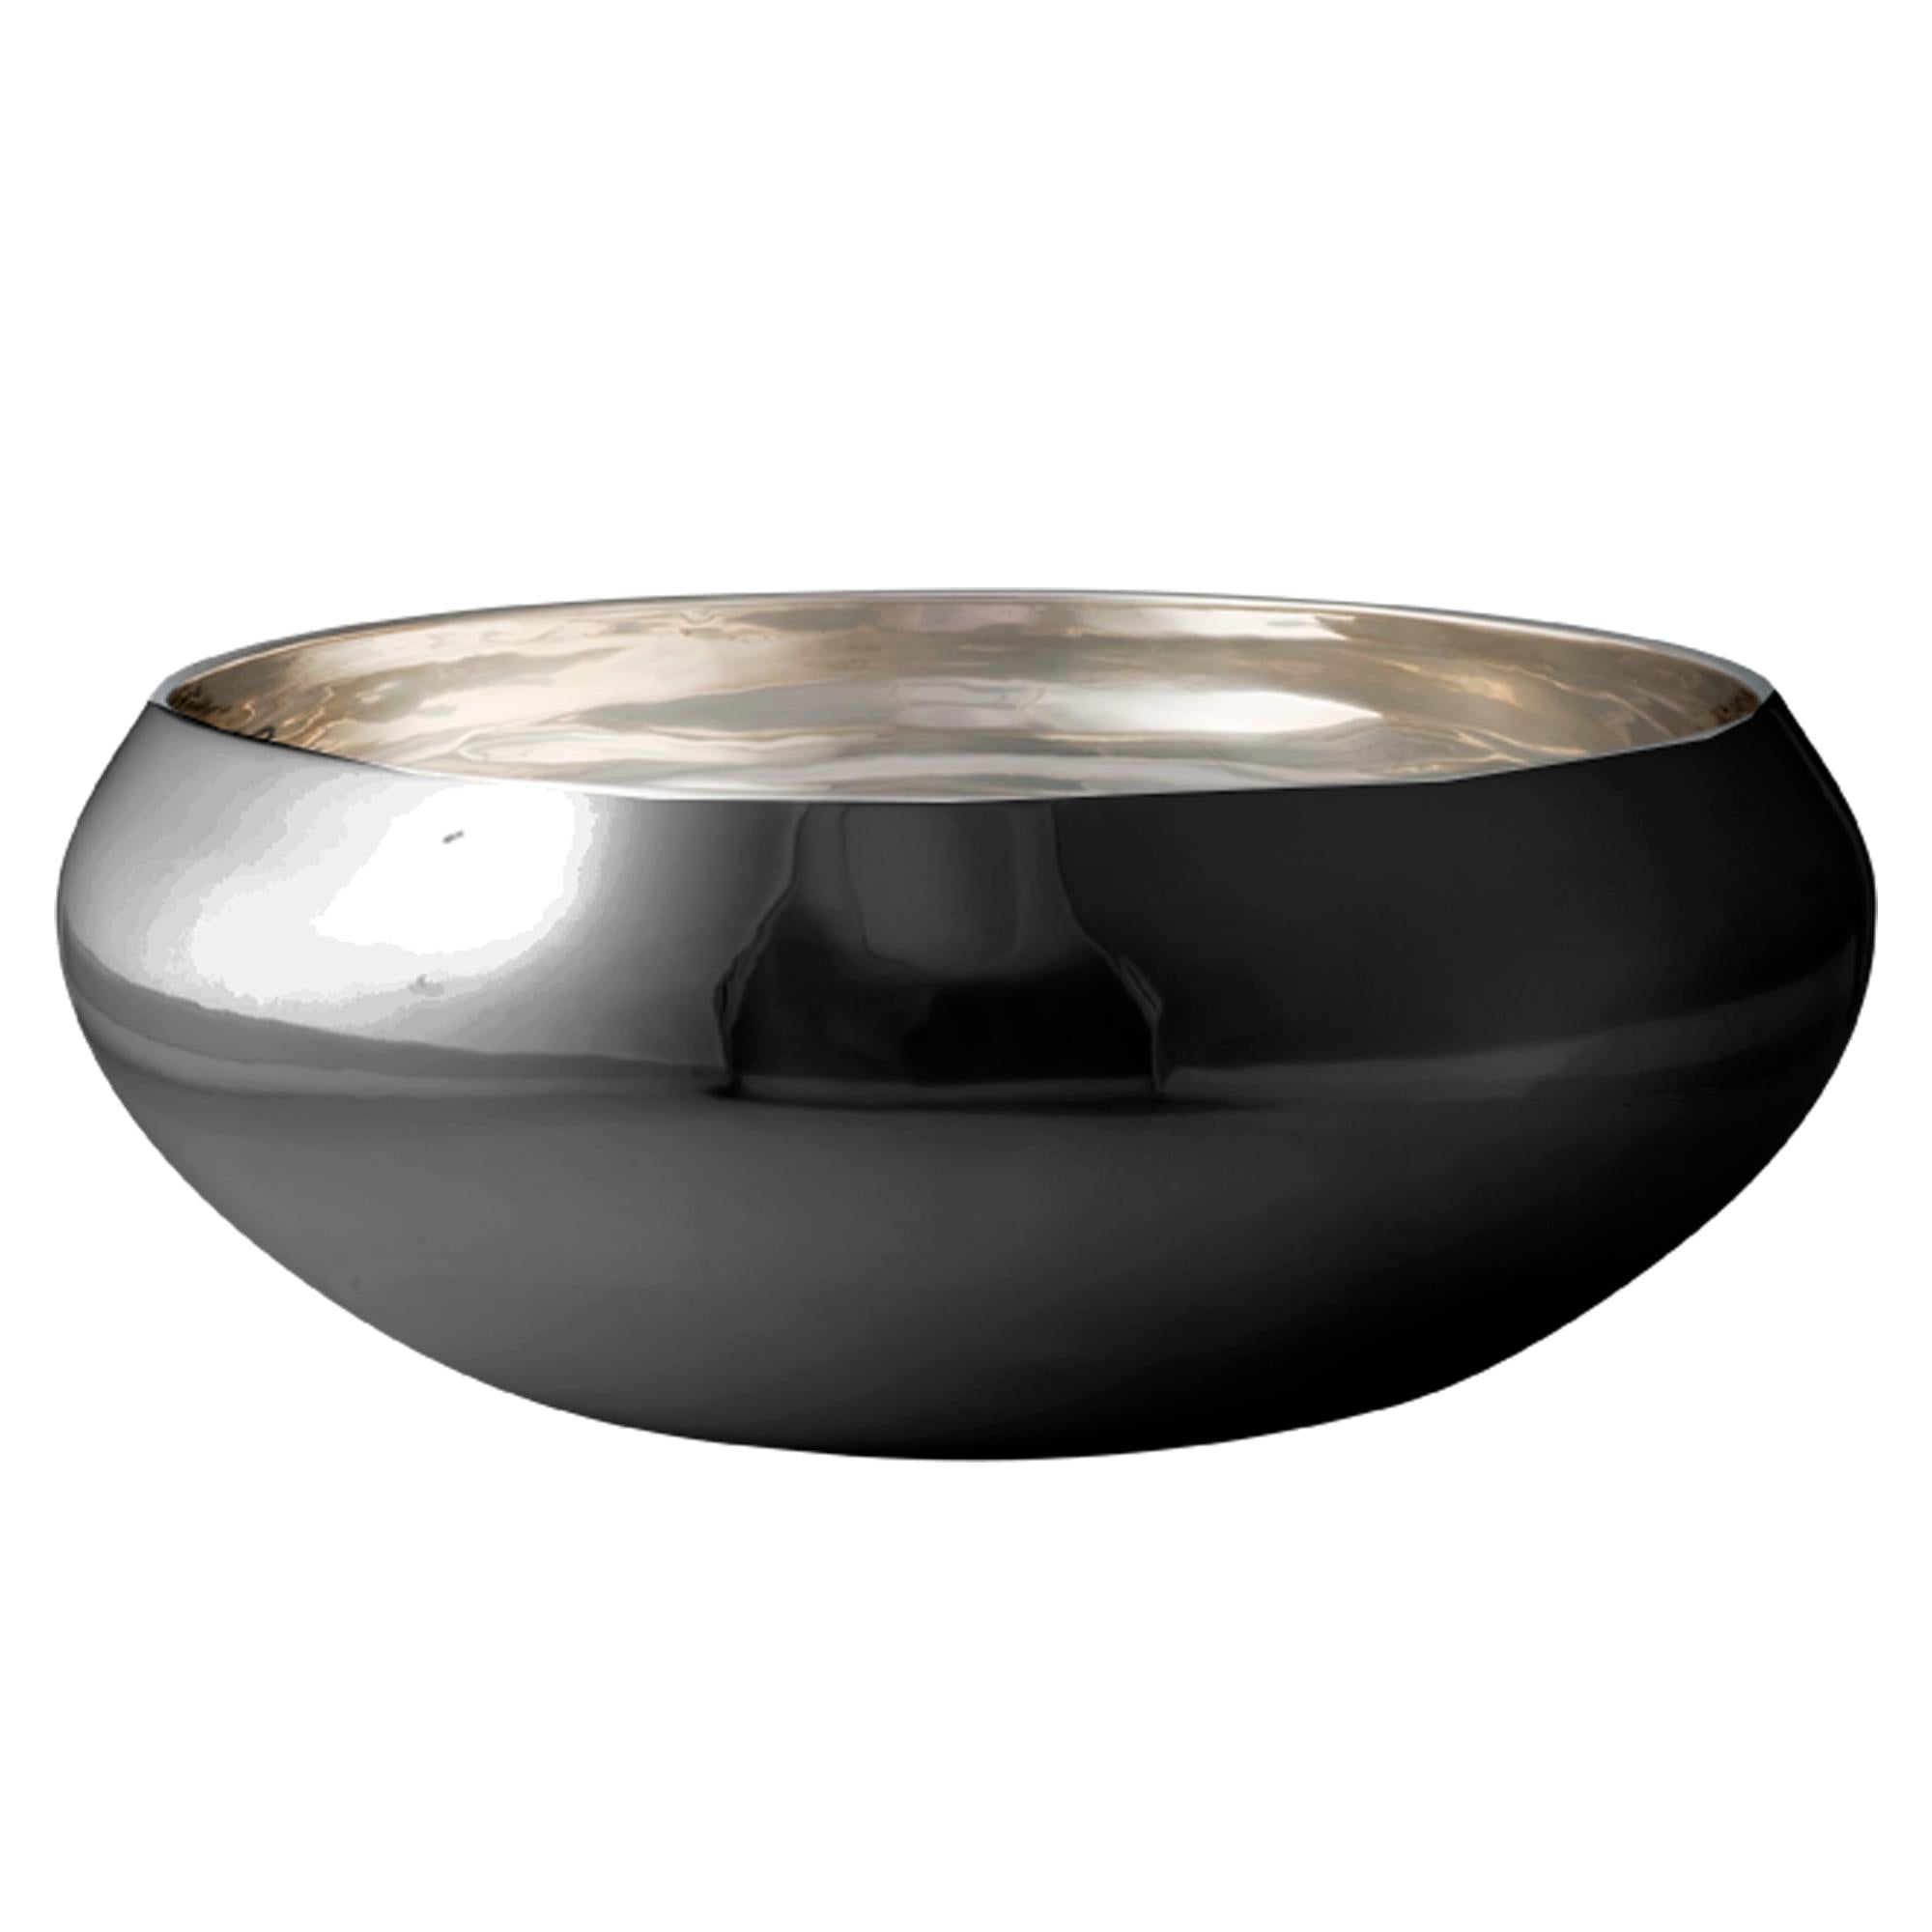 Kay Bojesen Nest Bowl由黑色钢制成，大型